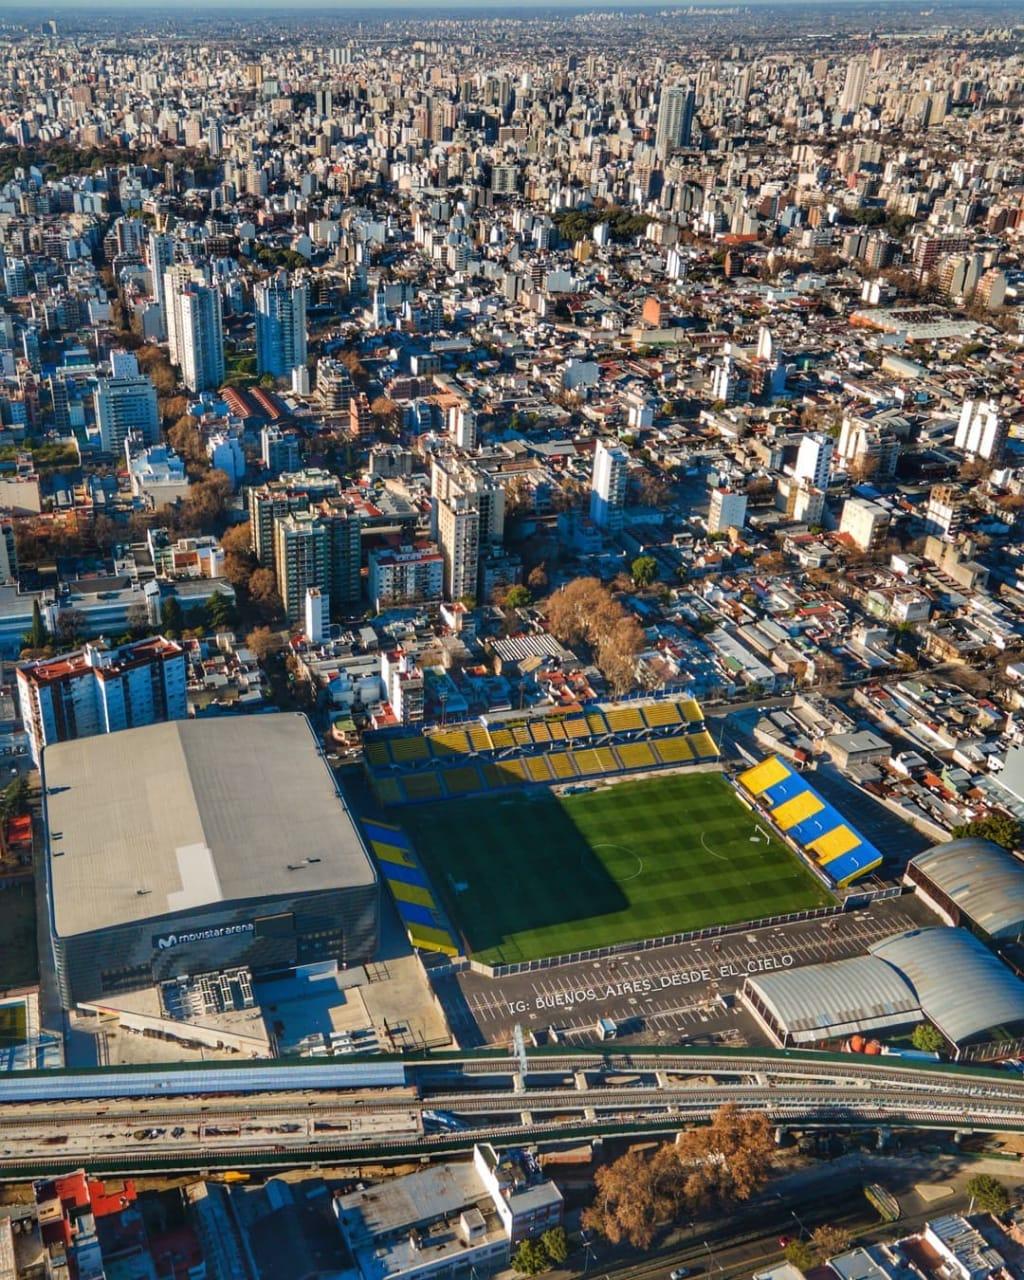 Club Atlético Atlanta (Villa Crespo-Buenos Aires-Argentina